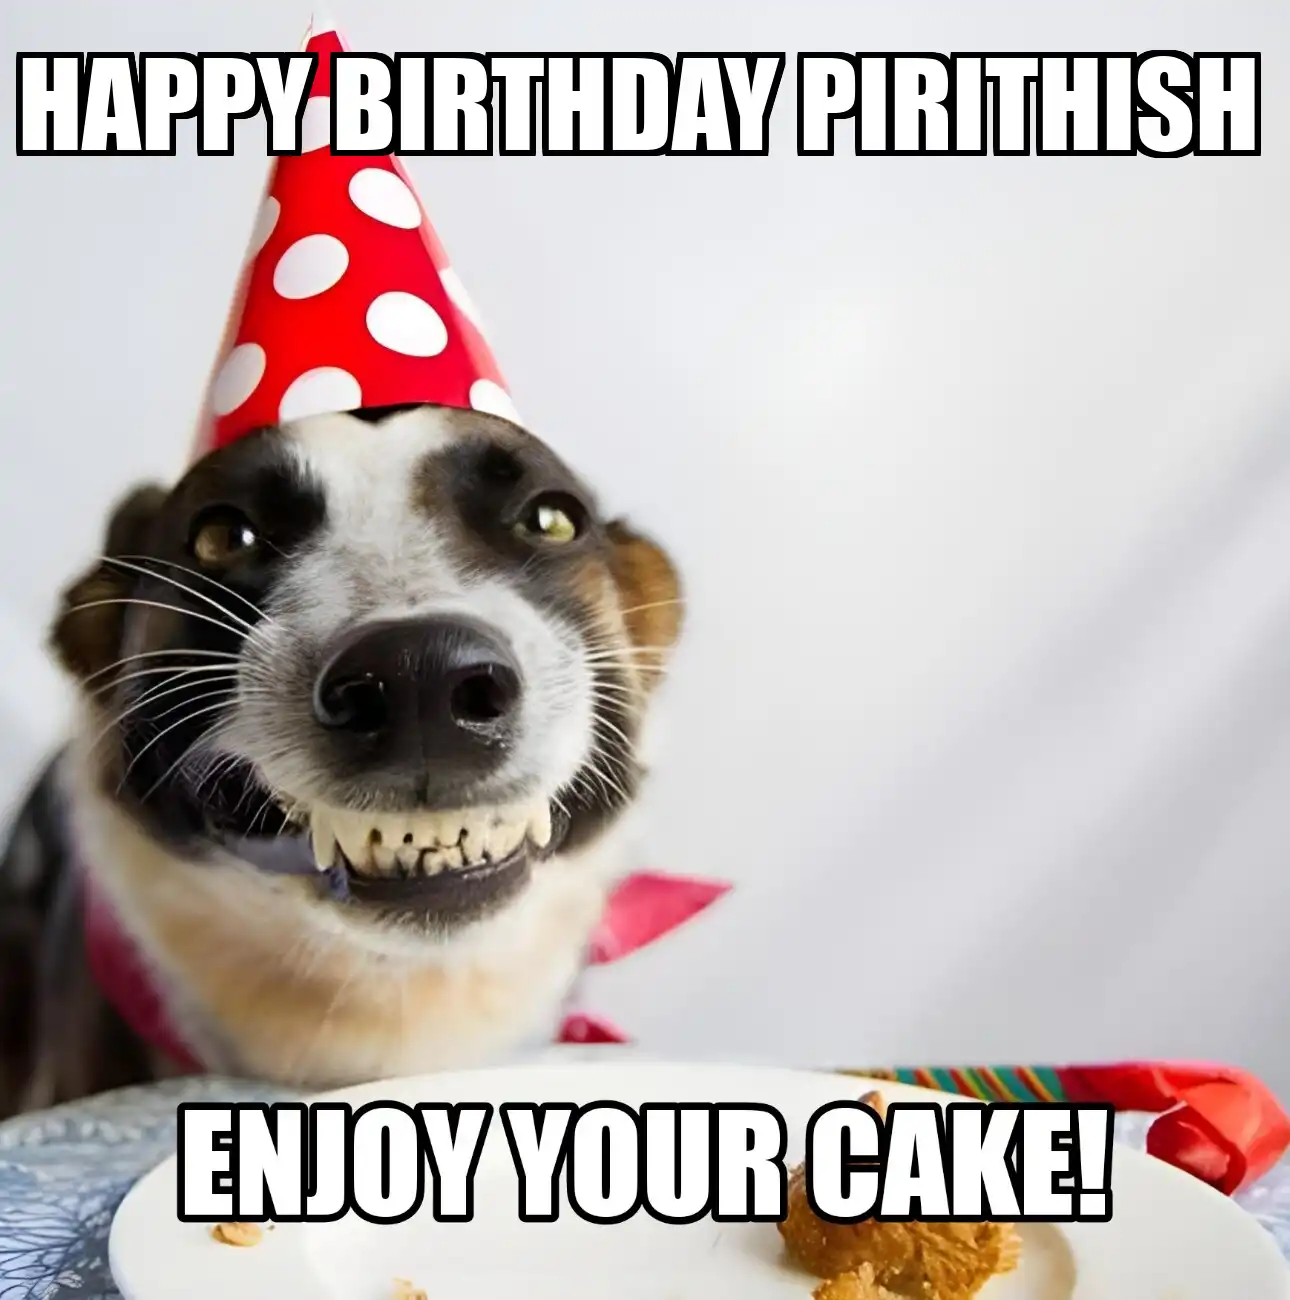 Happy Birthday Pirithish Enjoy Your Cake Dog Meme